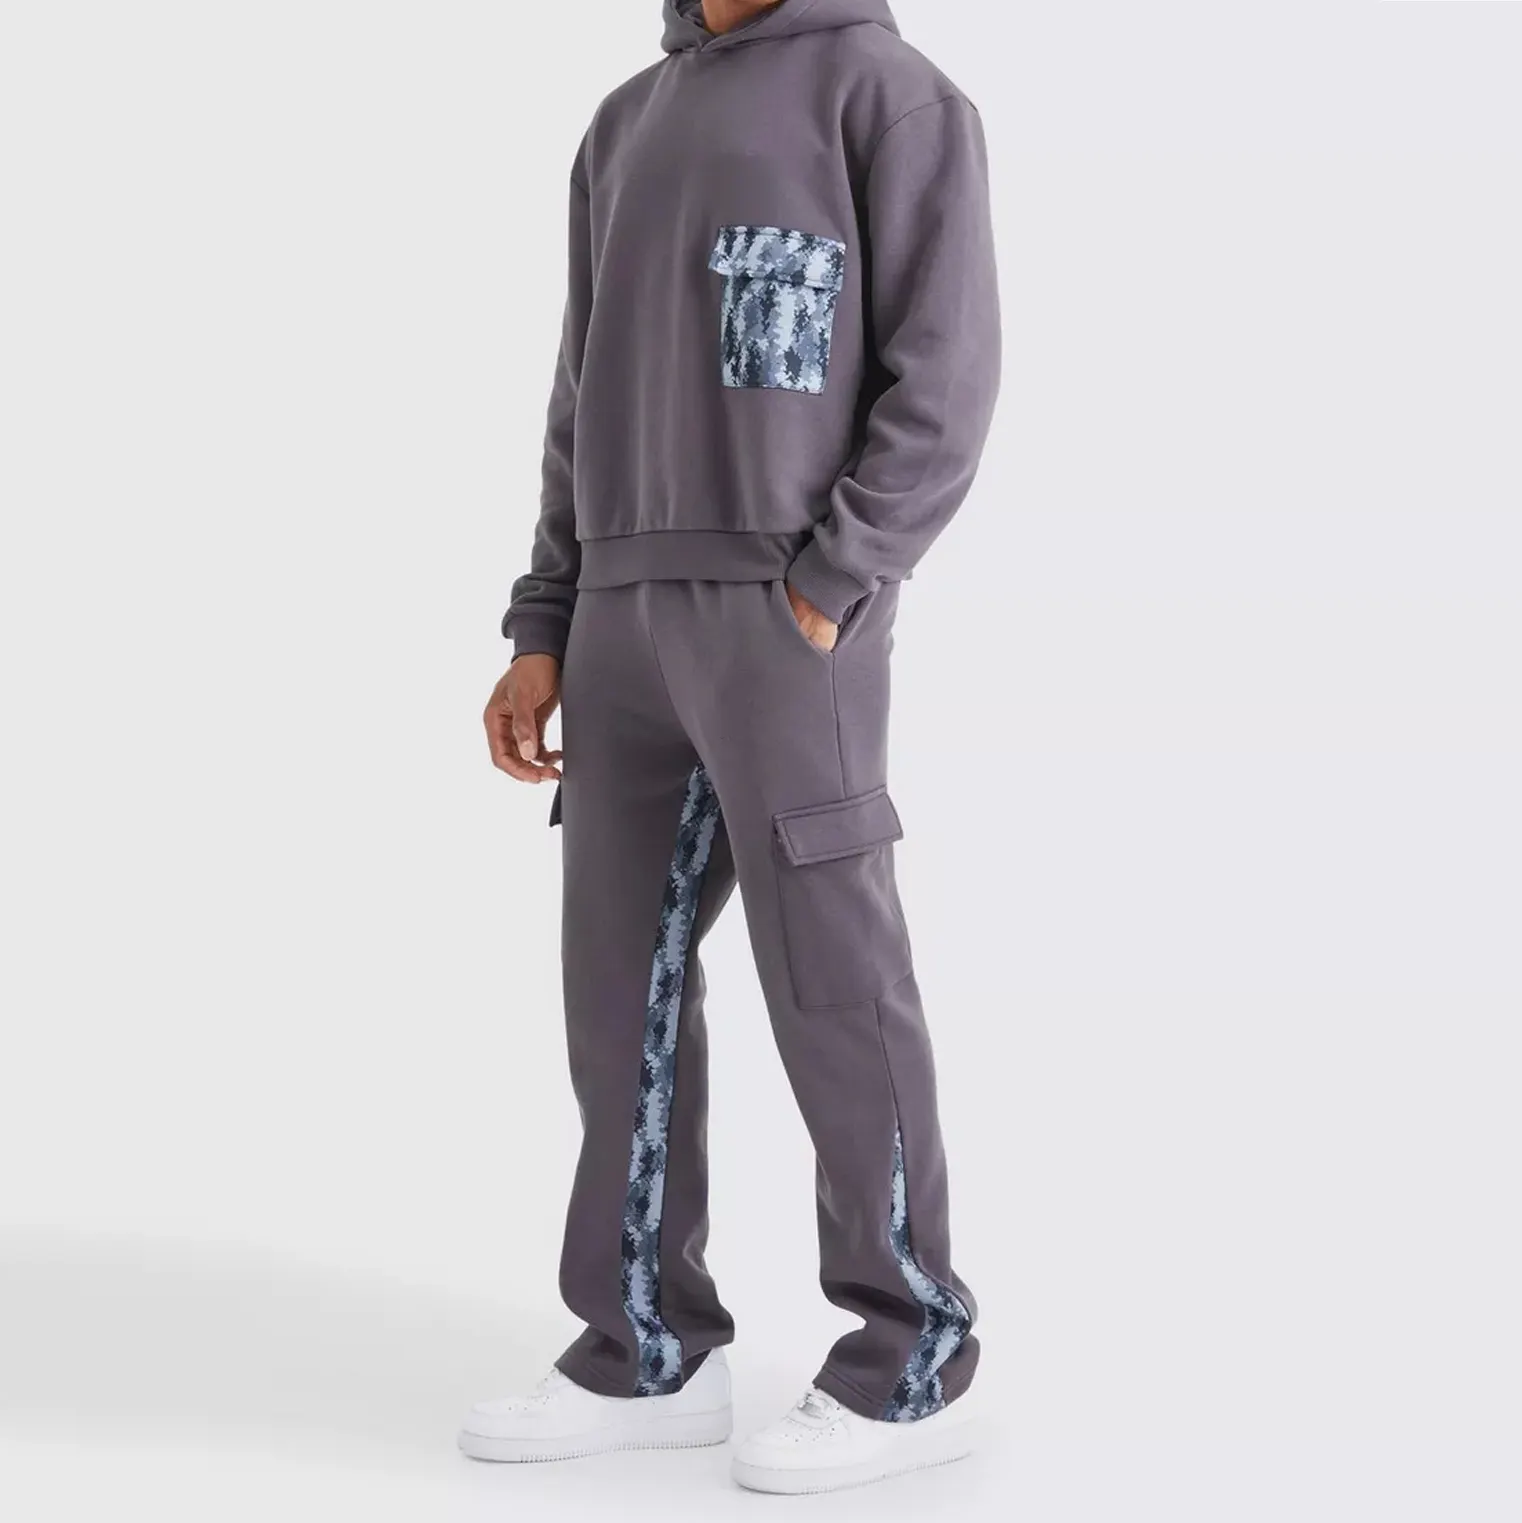 नया डिज़ाइन कस्टम लोगो 3डी एम्बॉस्ड रनिंग एथलेटिक स्वेटपैंट पुरुष स्ट्रीटवियर वर्कआउट जिम जॉगर्स ट्रैक पैंट पुरुषों के लिए